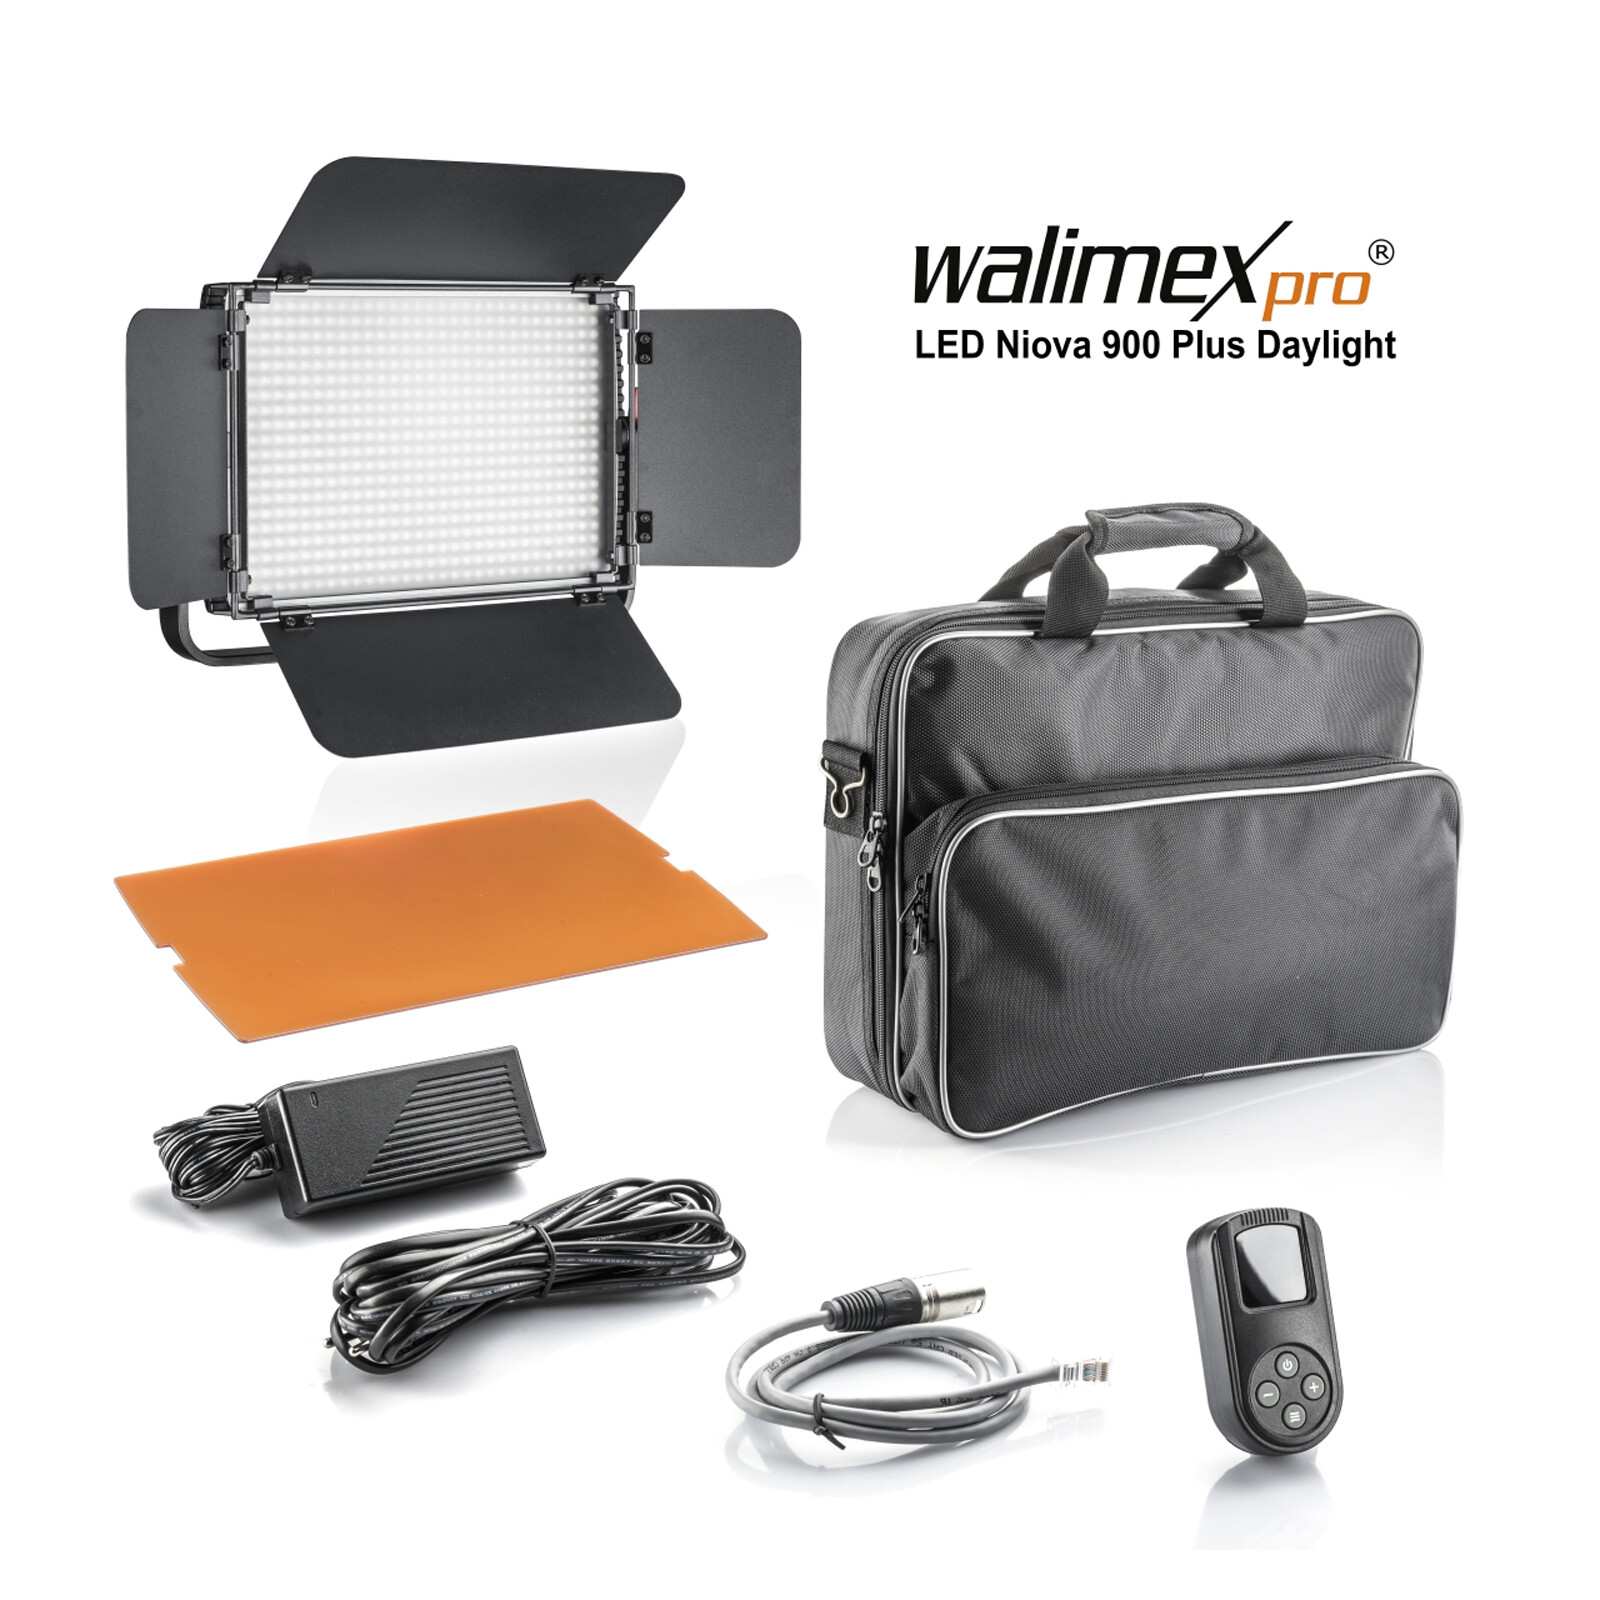 Walimex pro LED Niova 900 Plus Daylight